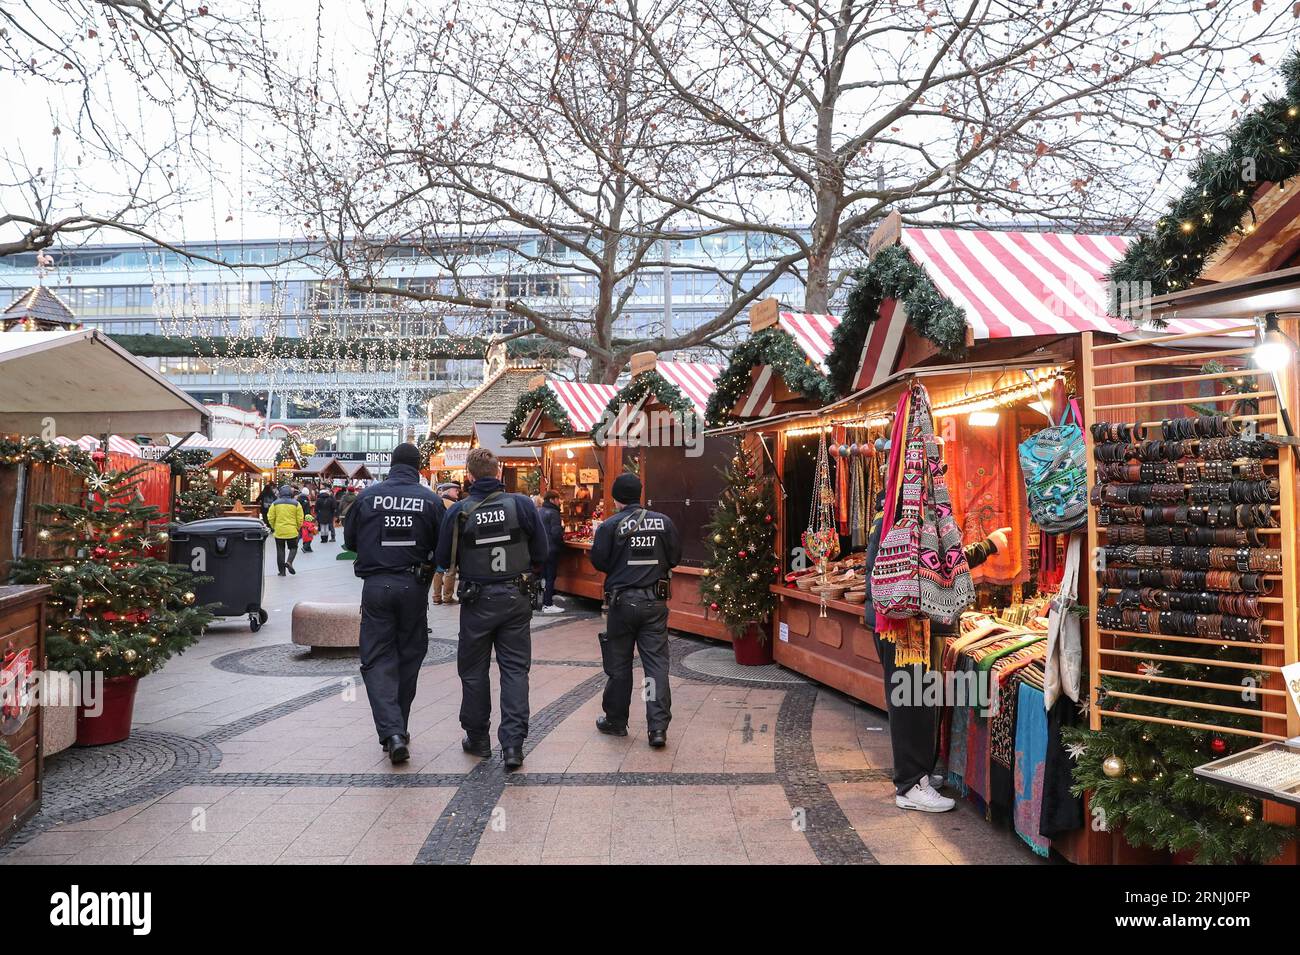 Anschlag in Berlin - Wiedereröffnung Weihnachtsmarkt am Breitscheidplatz (161222) -- BERLIN, 22. Dezember 2016 -- Polizisten patrouillieren auf dem wiedereröffneten Weihnachtsmarkt am Breitscheid-Platz in Berlin, Hauptstadt Deutschlands, am 22. Dezember 2016. Der Weihnachtsmarkt hier wurde am Montag angegriffen und am Donnerstag wieder eröffnet. ) (gl) DEUTSCHLAND-BERLIN-ANGEGRIFFENER WEIHNACHTSMARKT-WIEDERERÖFFNUNG ShanxYuqi PUBLICATIONxNOTxINxCHN Halt in Berlin Wiedereröffnung des Weihnachtsmarktes bei Verwaltungen Berlin DEZ 22 2016 Polizisten Patrouille AUF dem wiedereröffneten Weihnachtsmarkt AM Breitscheid-Platz in der Hauptstadt Berlin AM 22. DEZ 2016 Stockfoto